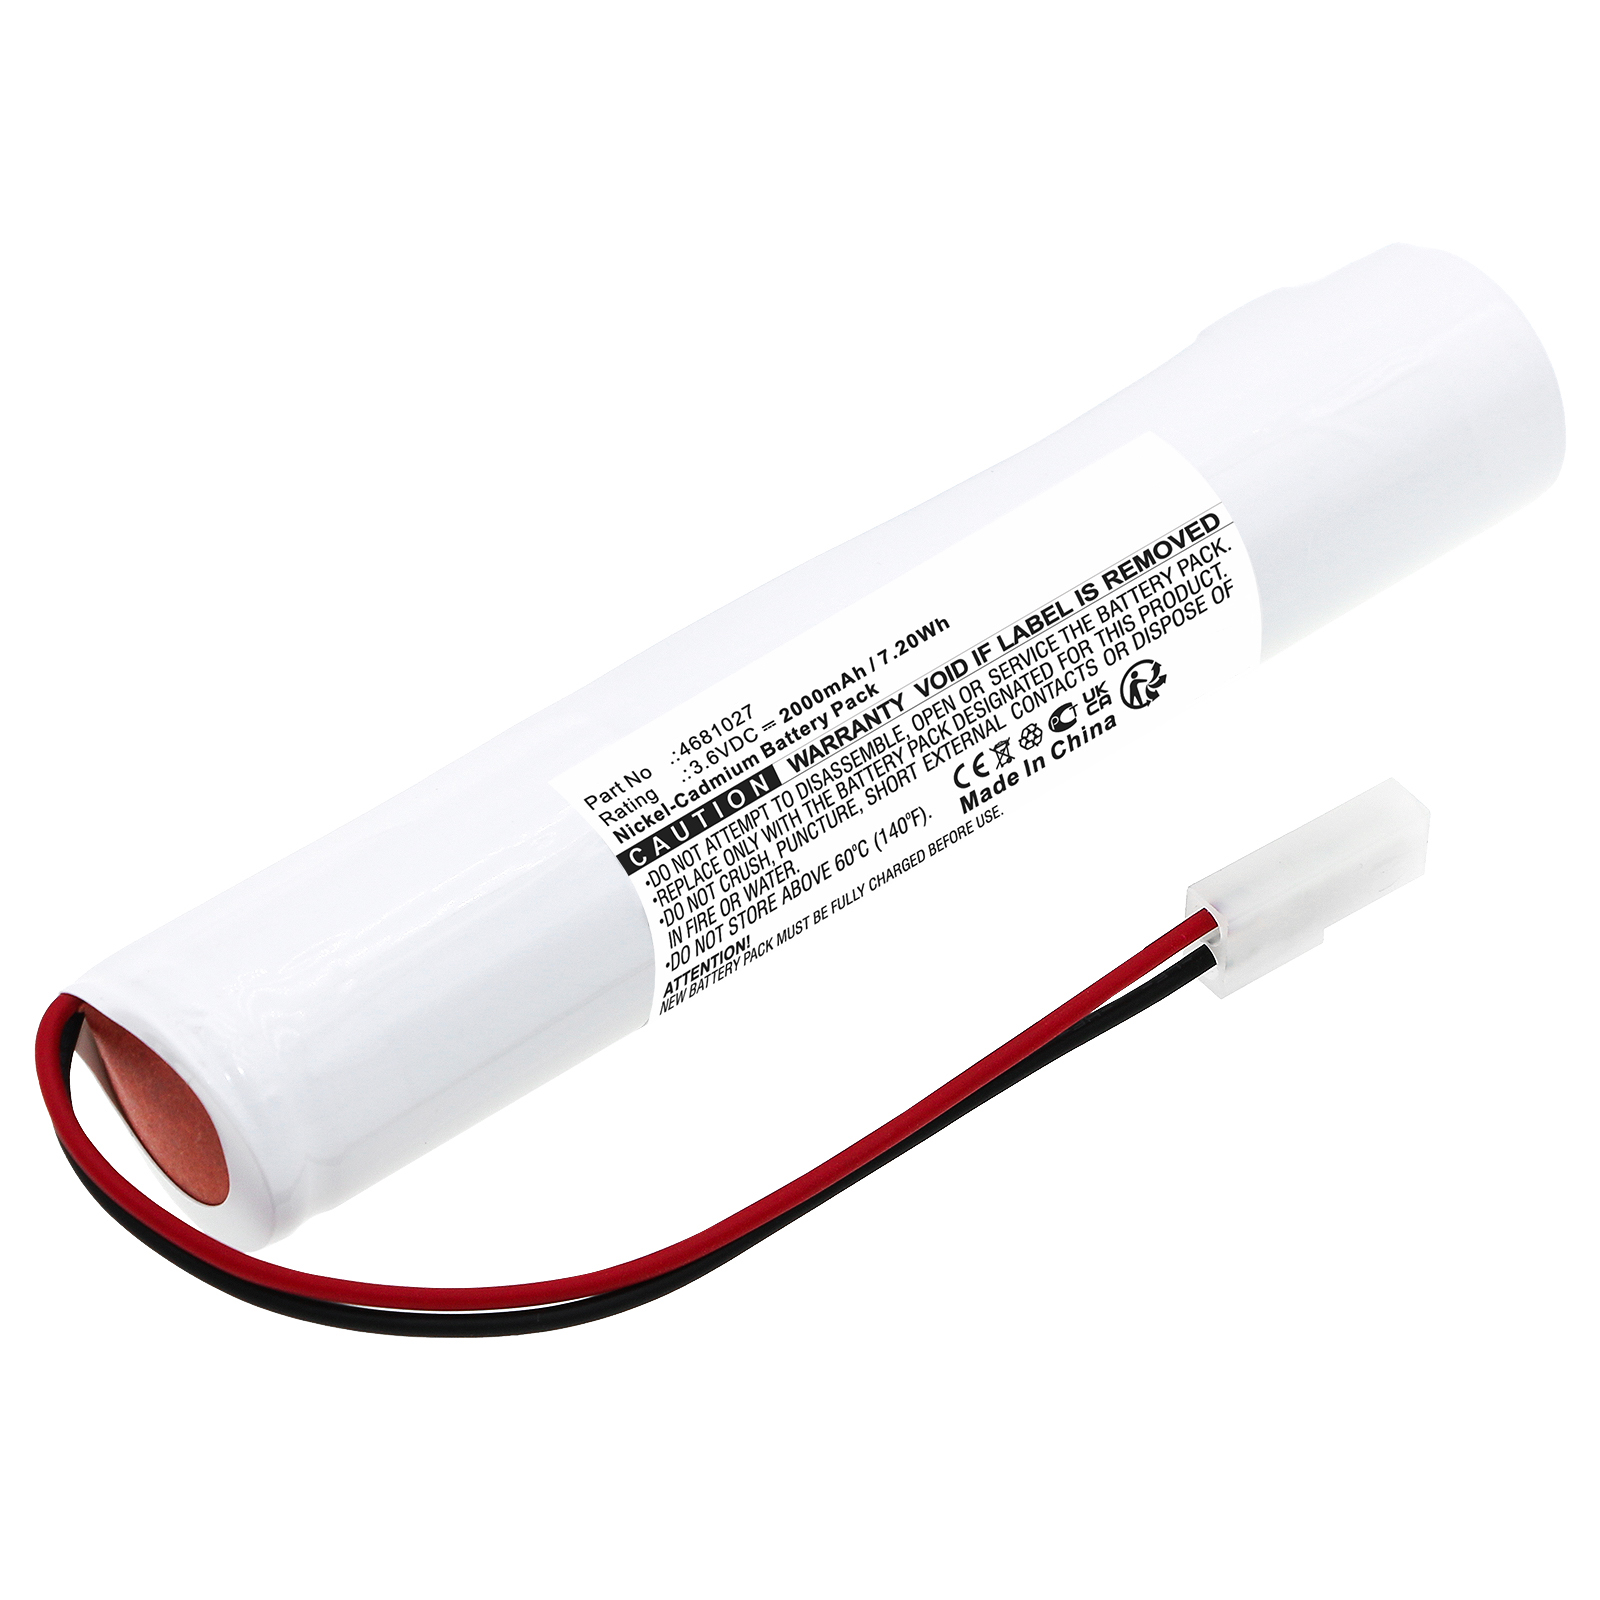 Synergy Digital Emergency Lighting Battery, Compatible with Thorn 4681027 Emergency Lighting Battery (Ni-CD, 3.6V, 2000mAh)